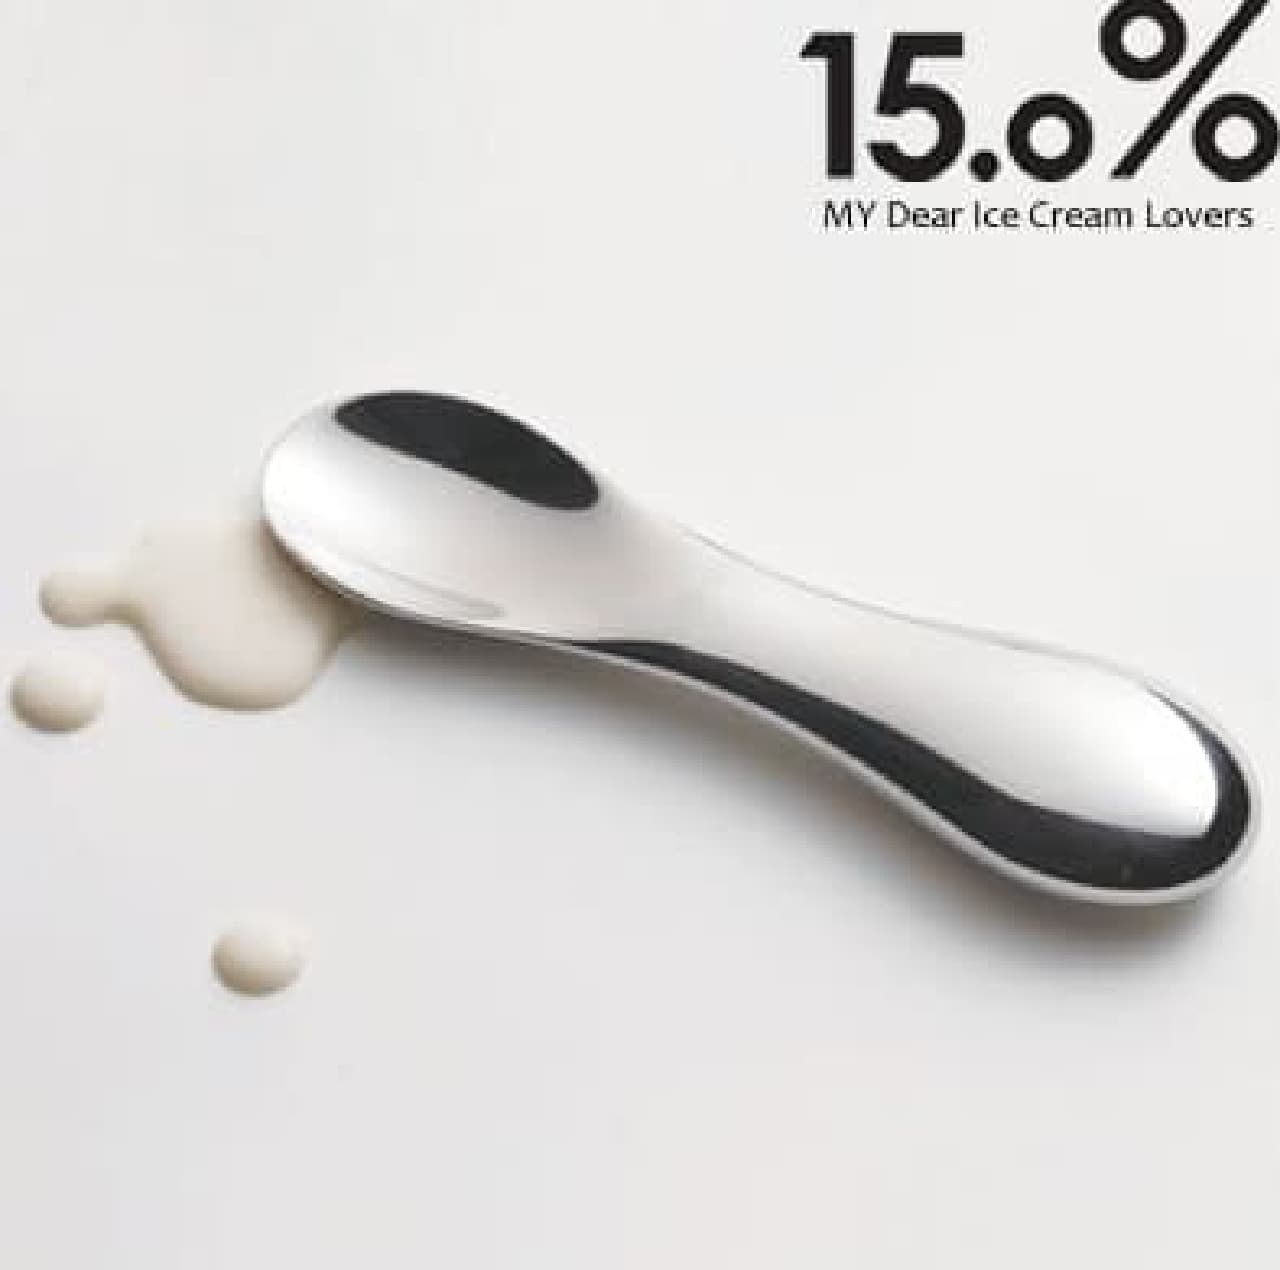 カチカチアイスクリーム専用「15.0%アイスクリームスクープ」